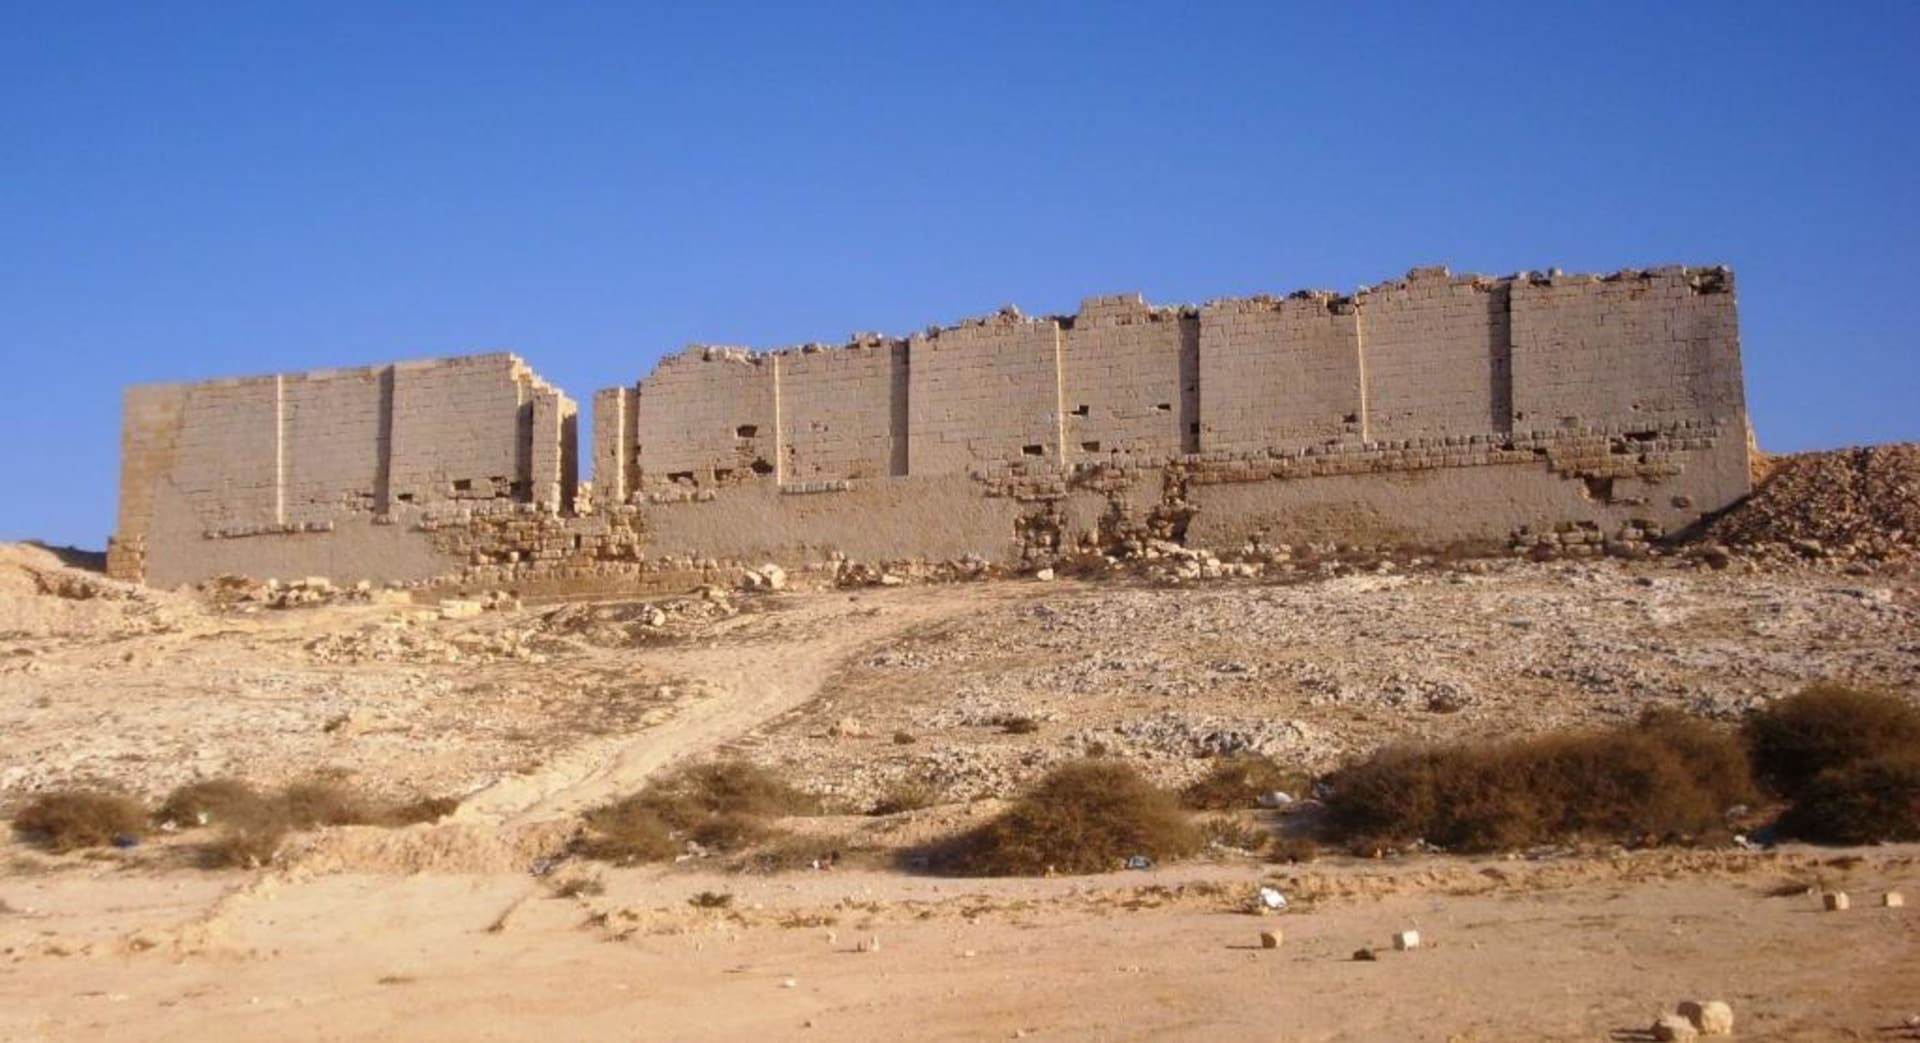 Pohled na severní stěnu chrámu Taposiris Magna